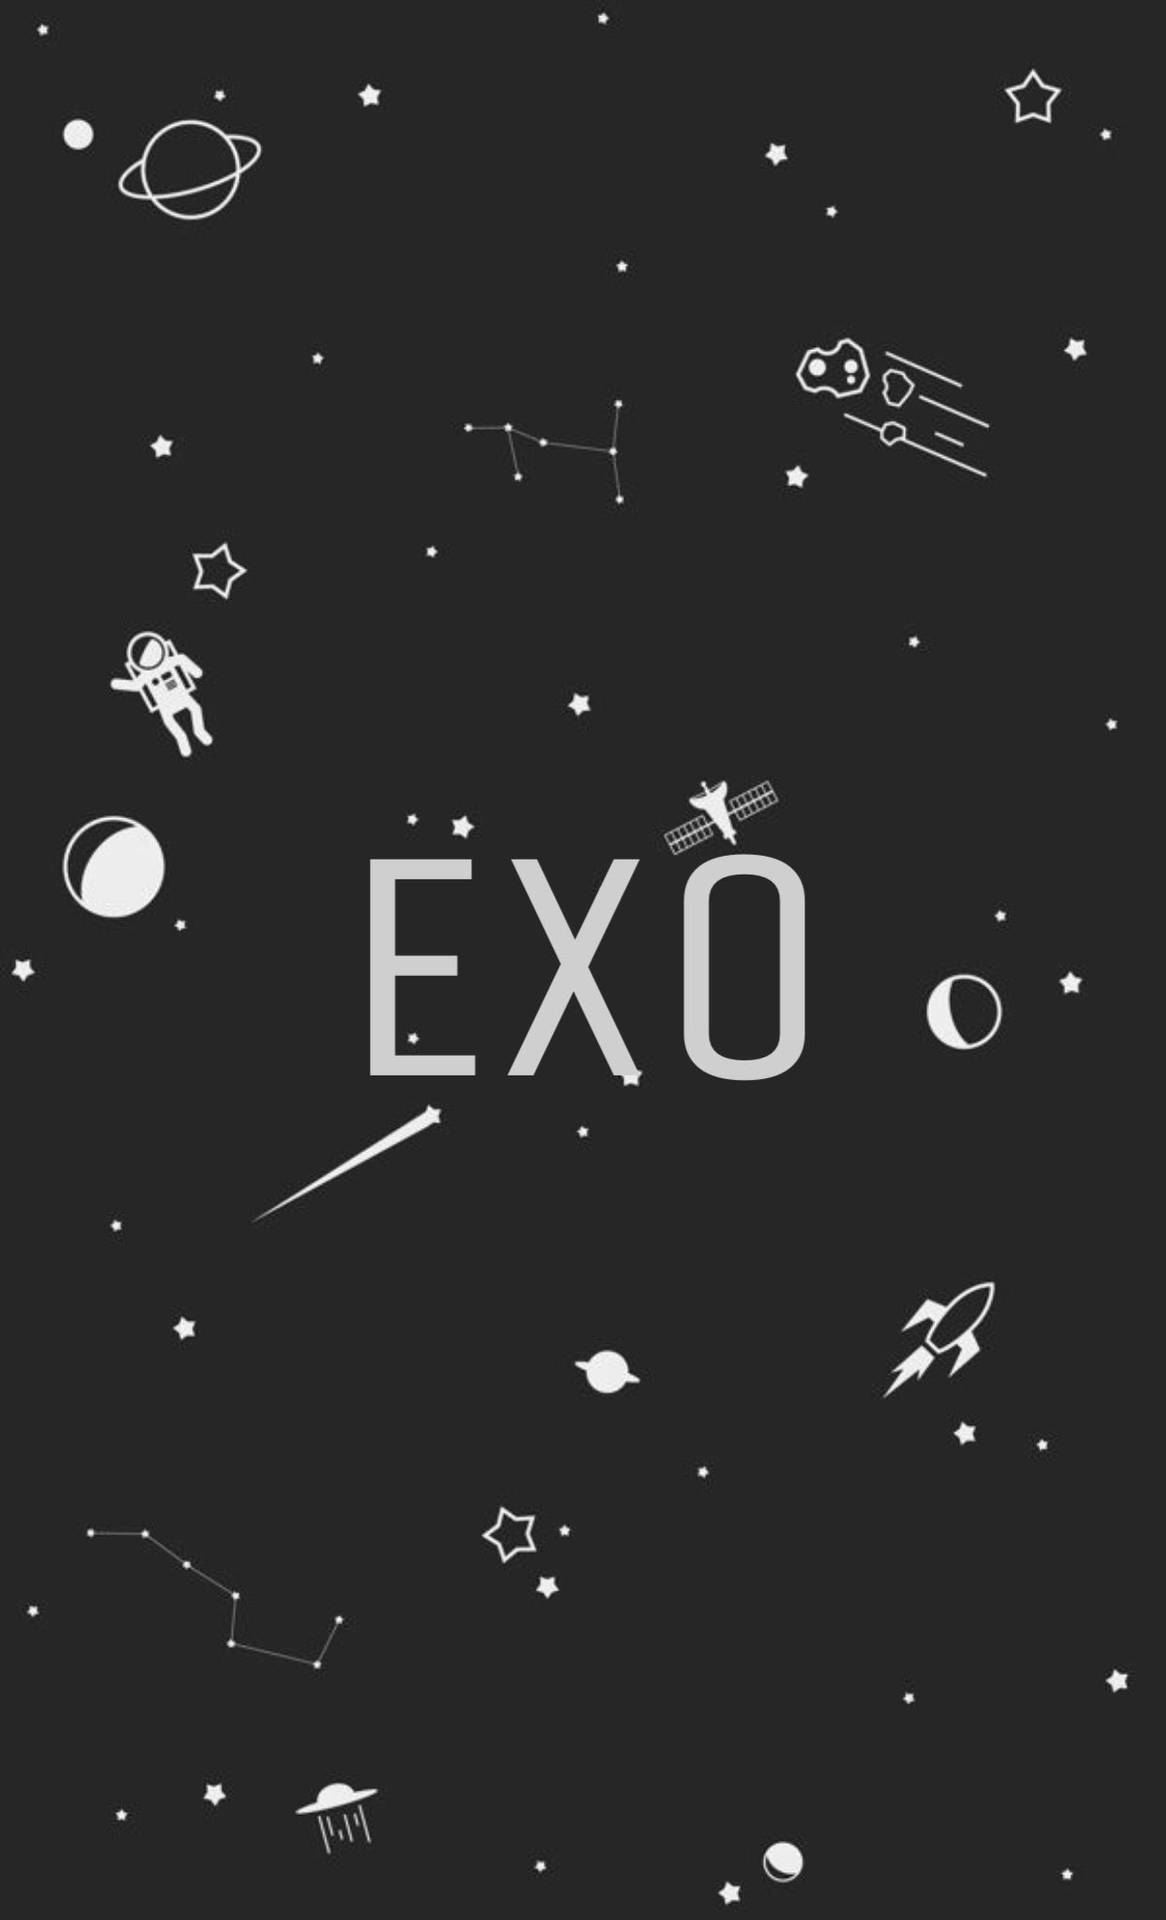 Exo Galaxy Fan Art Background